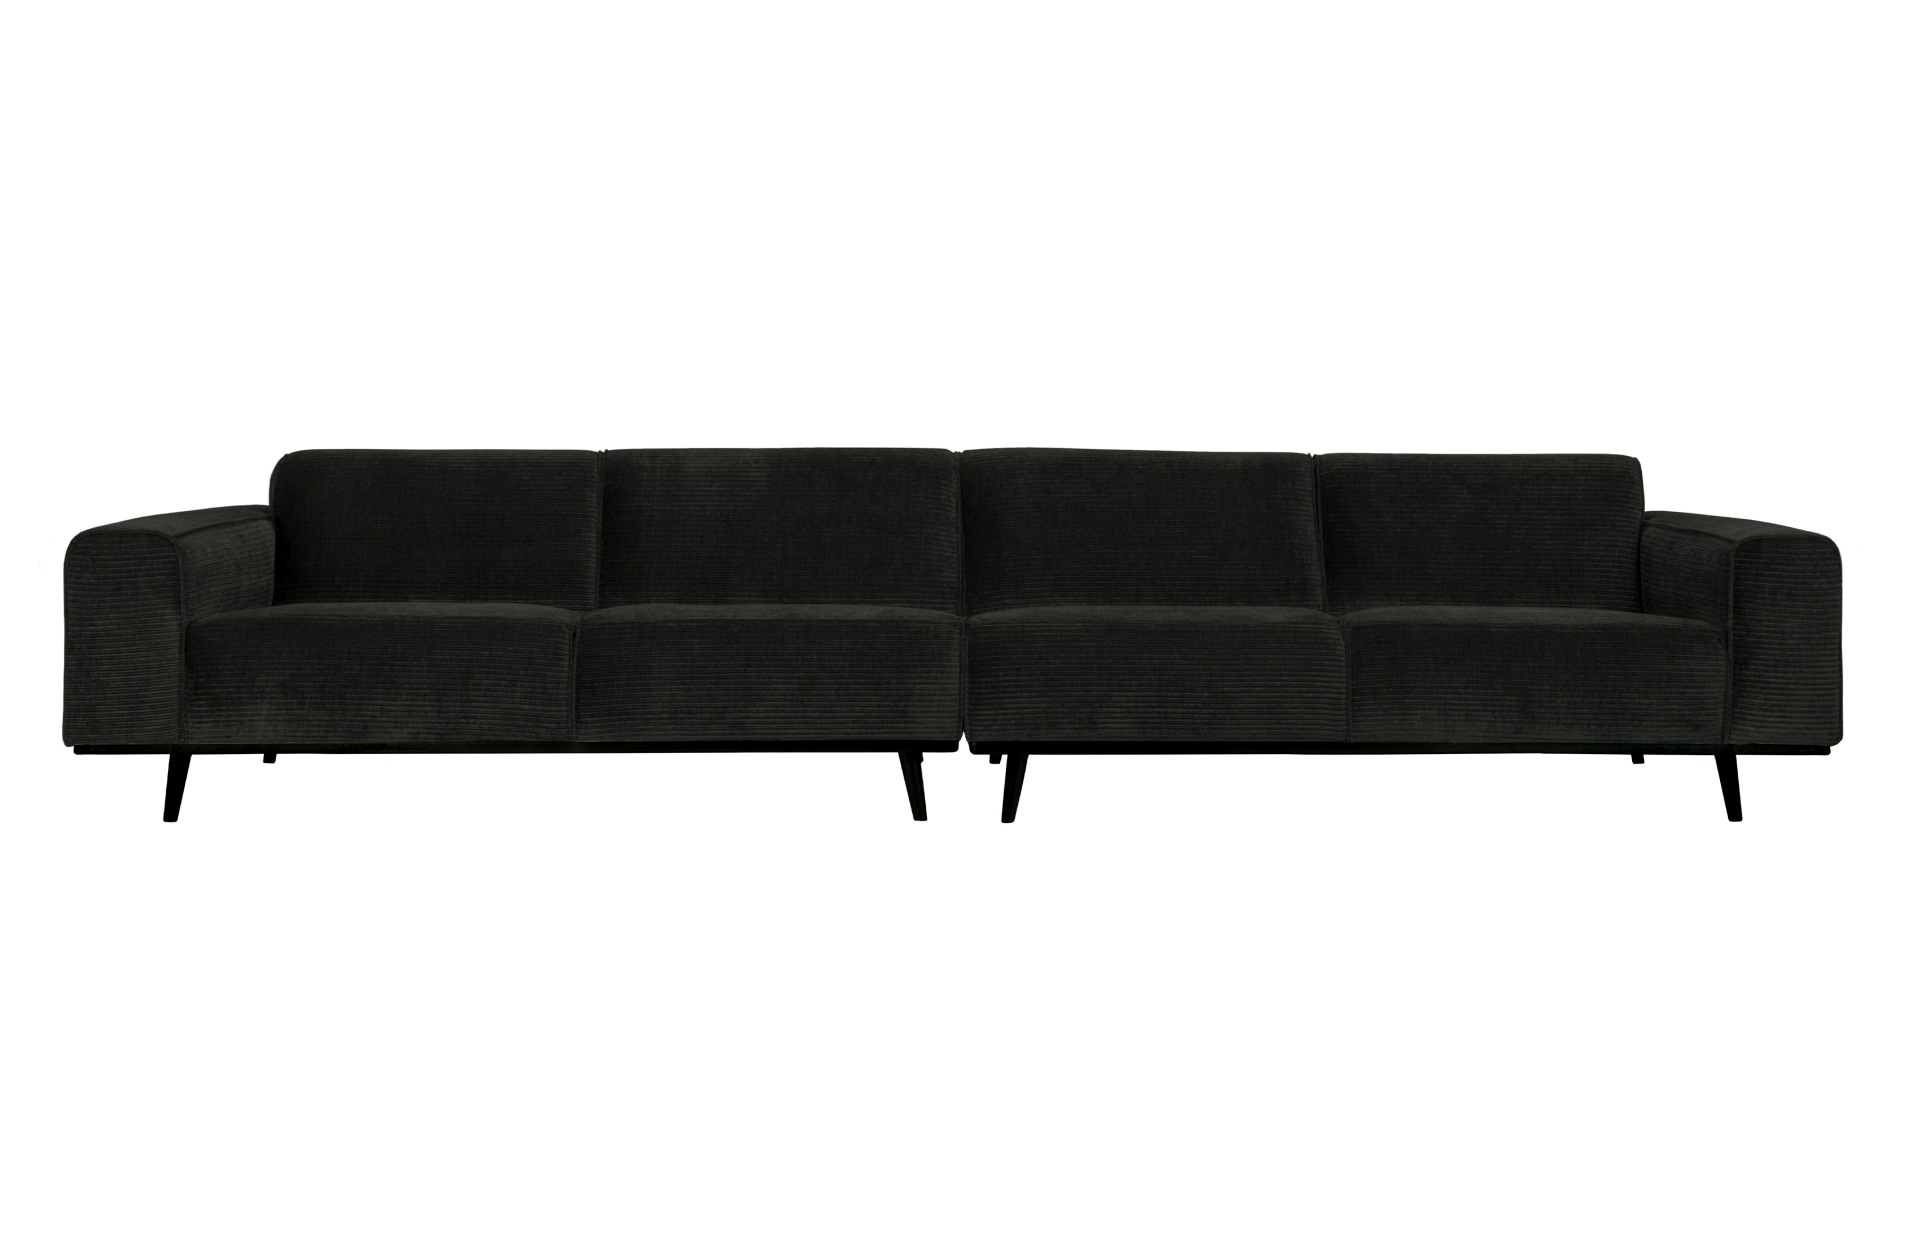 Das Sofa Statement überzeugt mit seinem modernen Design. Gefertigt wurde es aus gewebten Jacquard, welches einen Graphit Farbton besitzen. Das Gestell ist aus Birkenholz und hat eine schwarze Farbe. Das Sofa hat eine Breite von 372 cm.